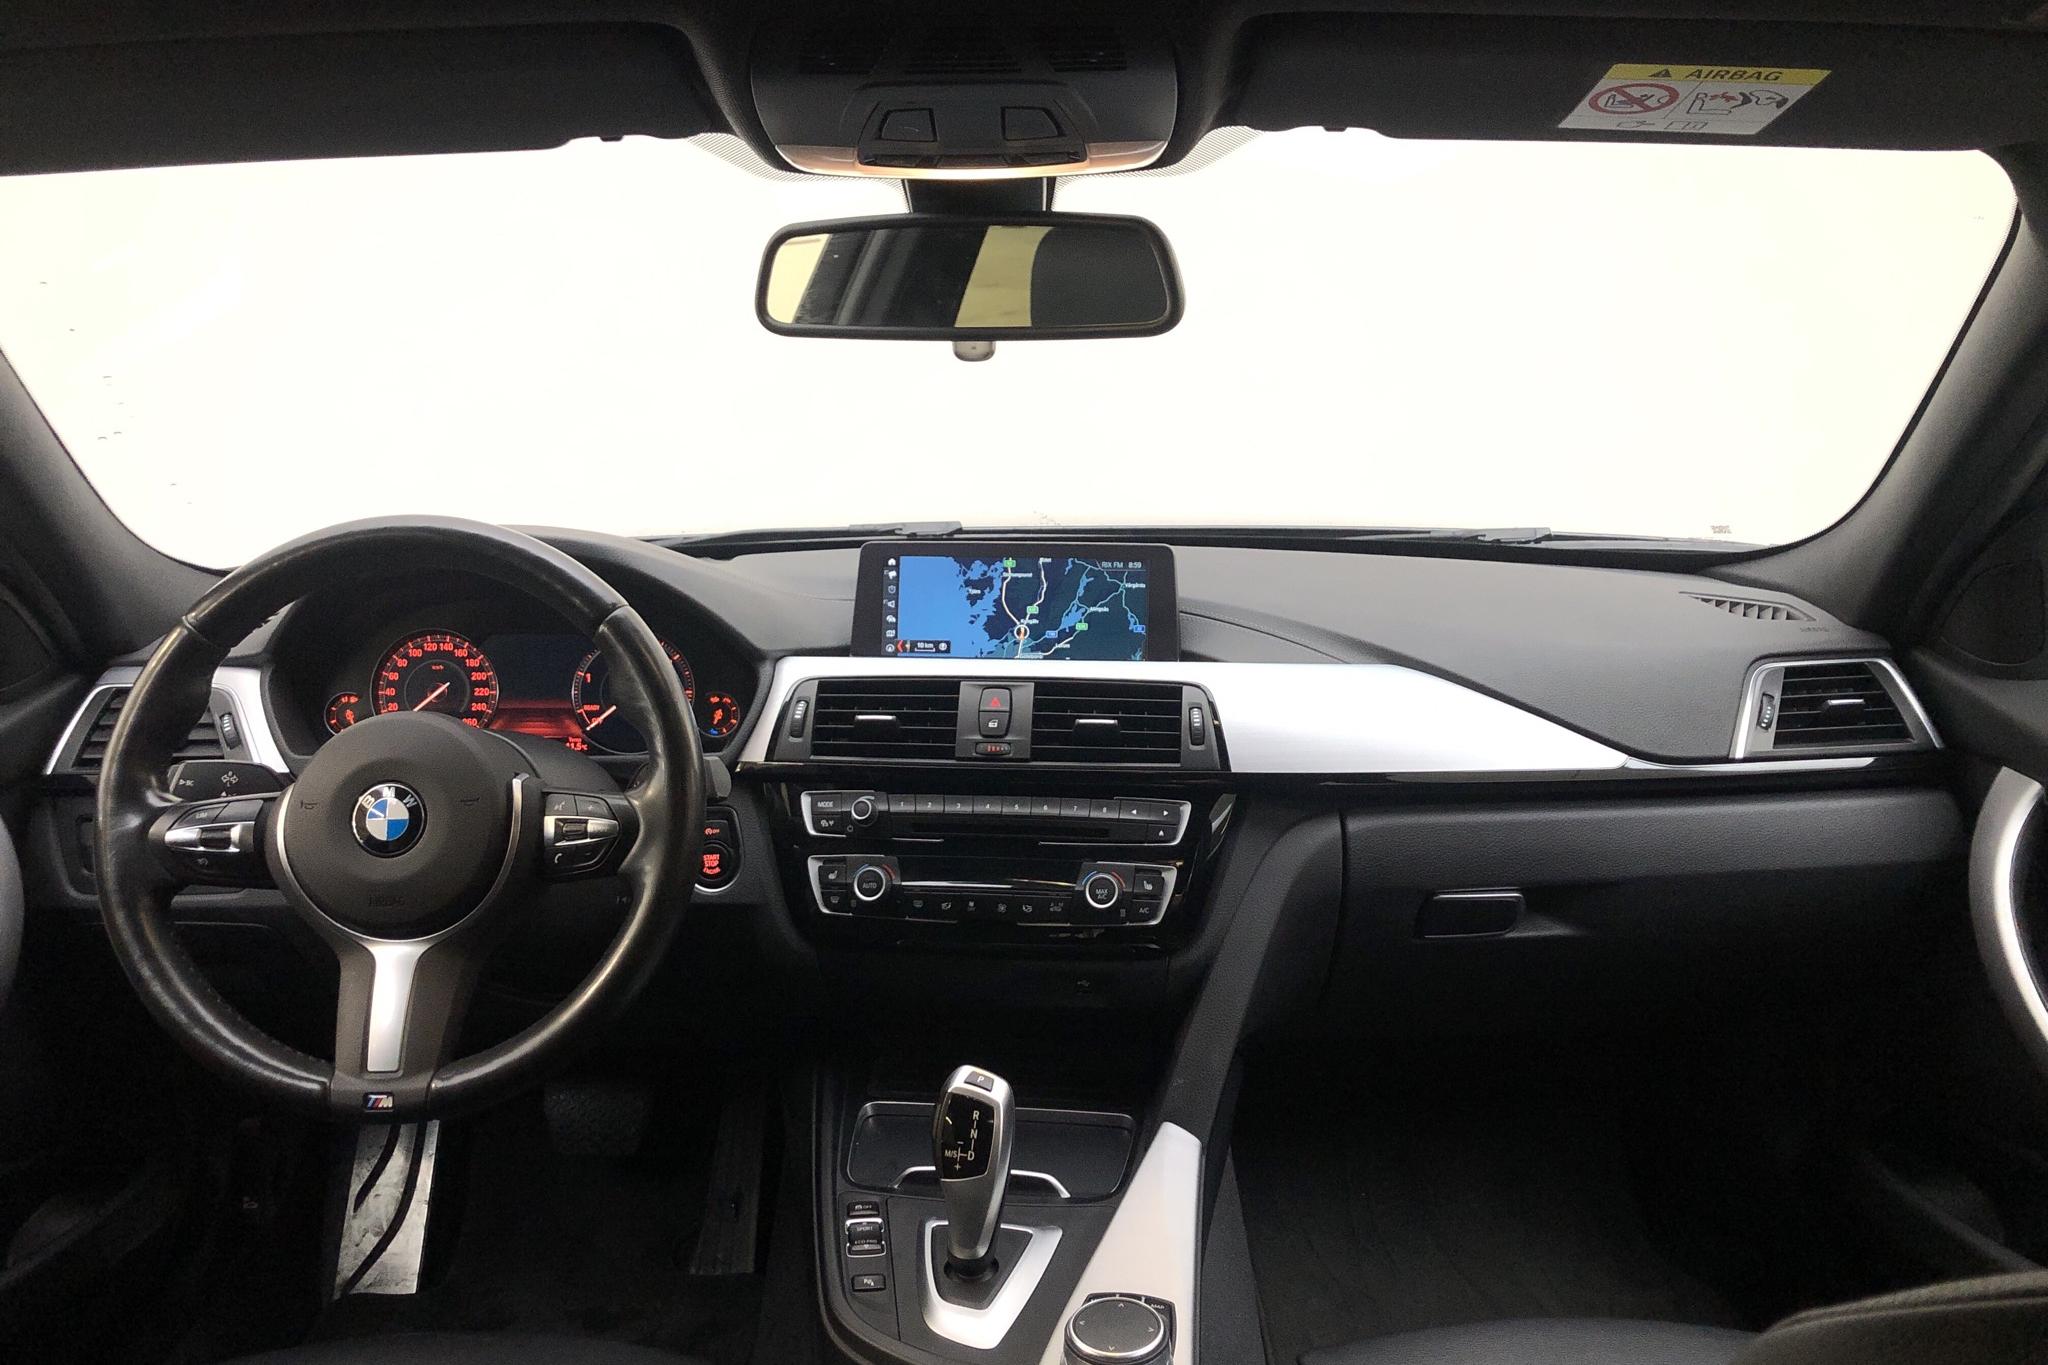 BMW 320d xDrive Touring, F31 (190hk) - 81 240 km - Automatic - black - 2019